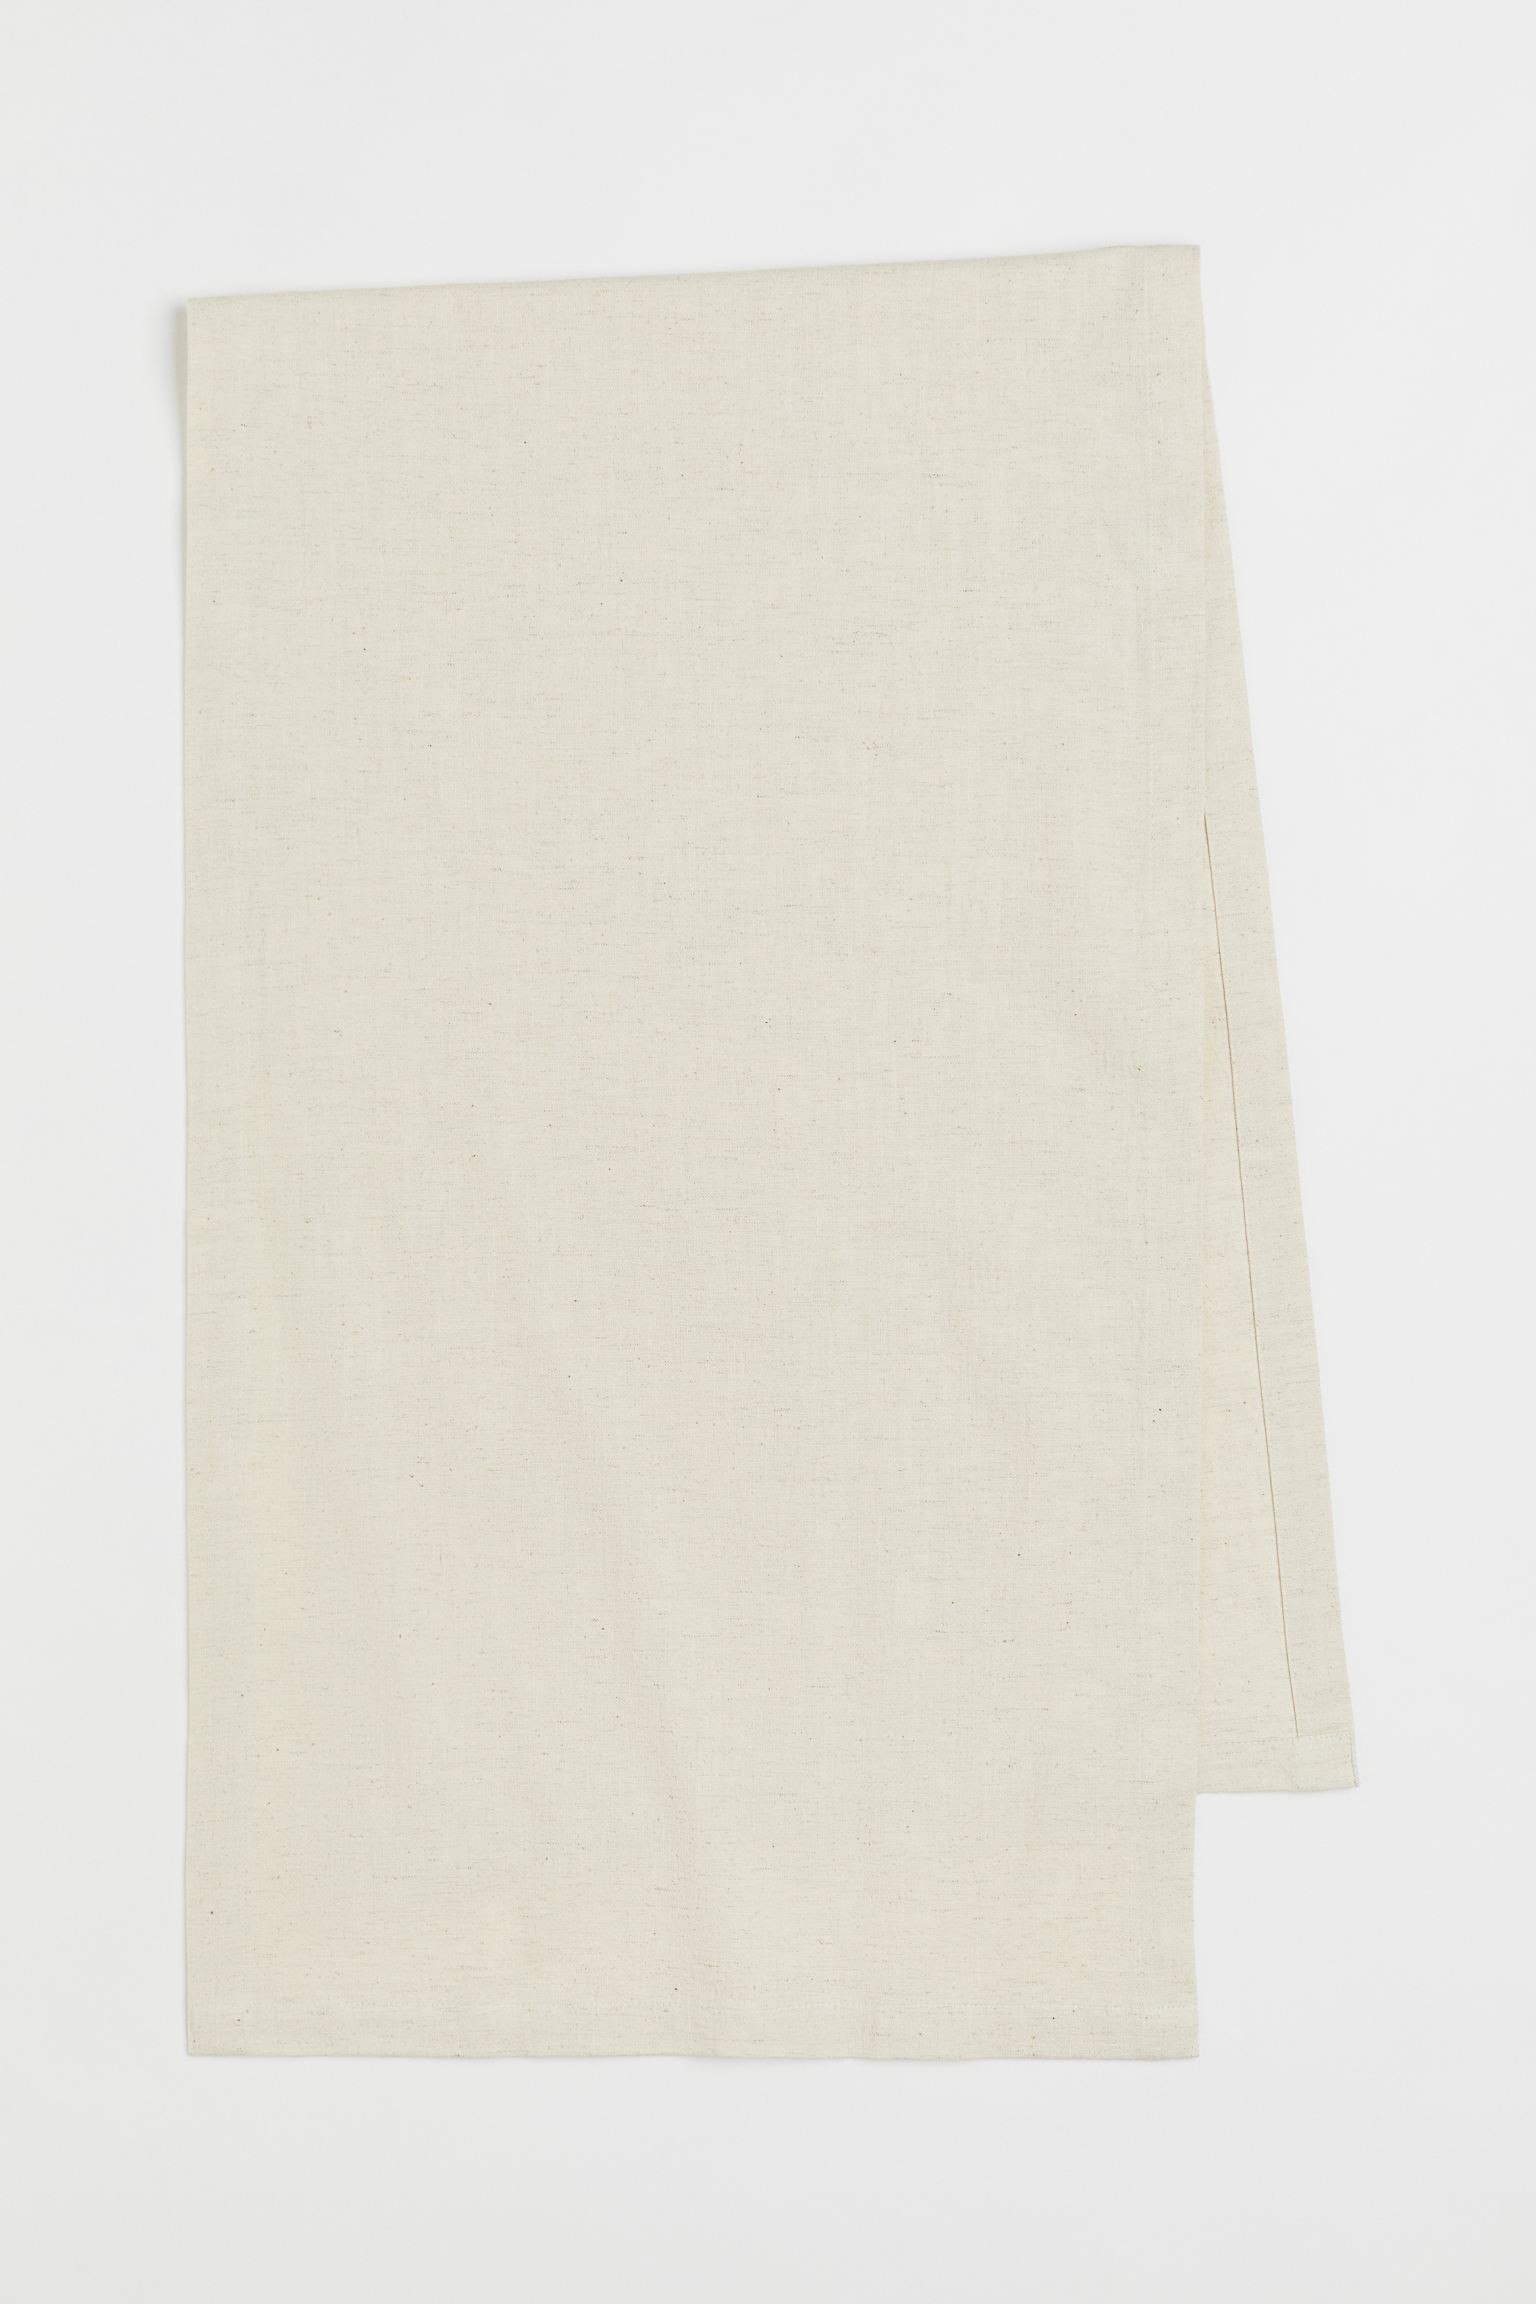 H&M Home Настольная дорожка из смесовой льняной ткани, светло-бежевый, 45x150 1068621001 | 1068621001